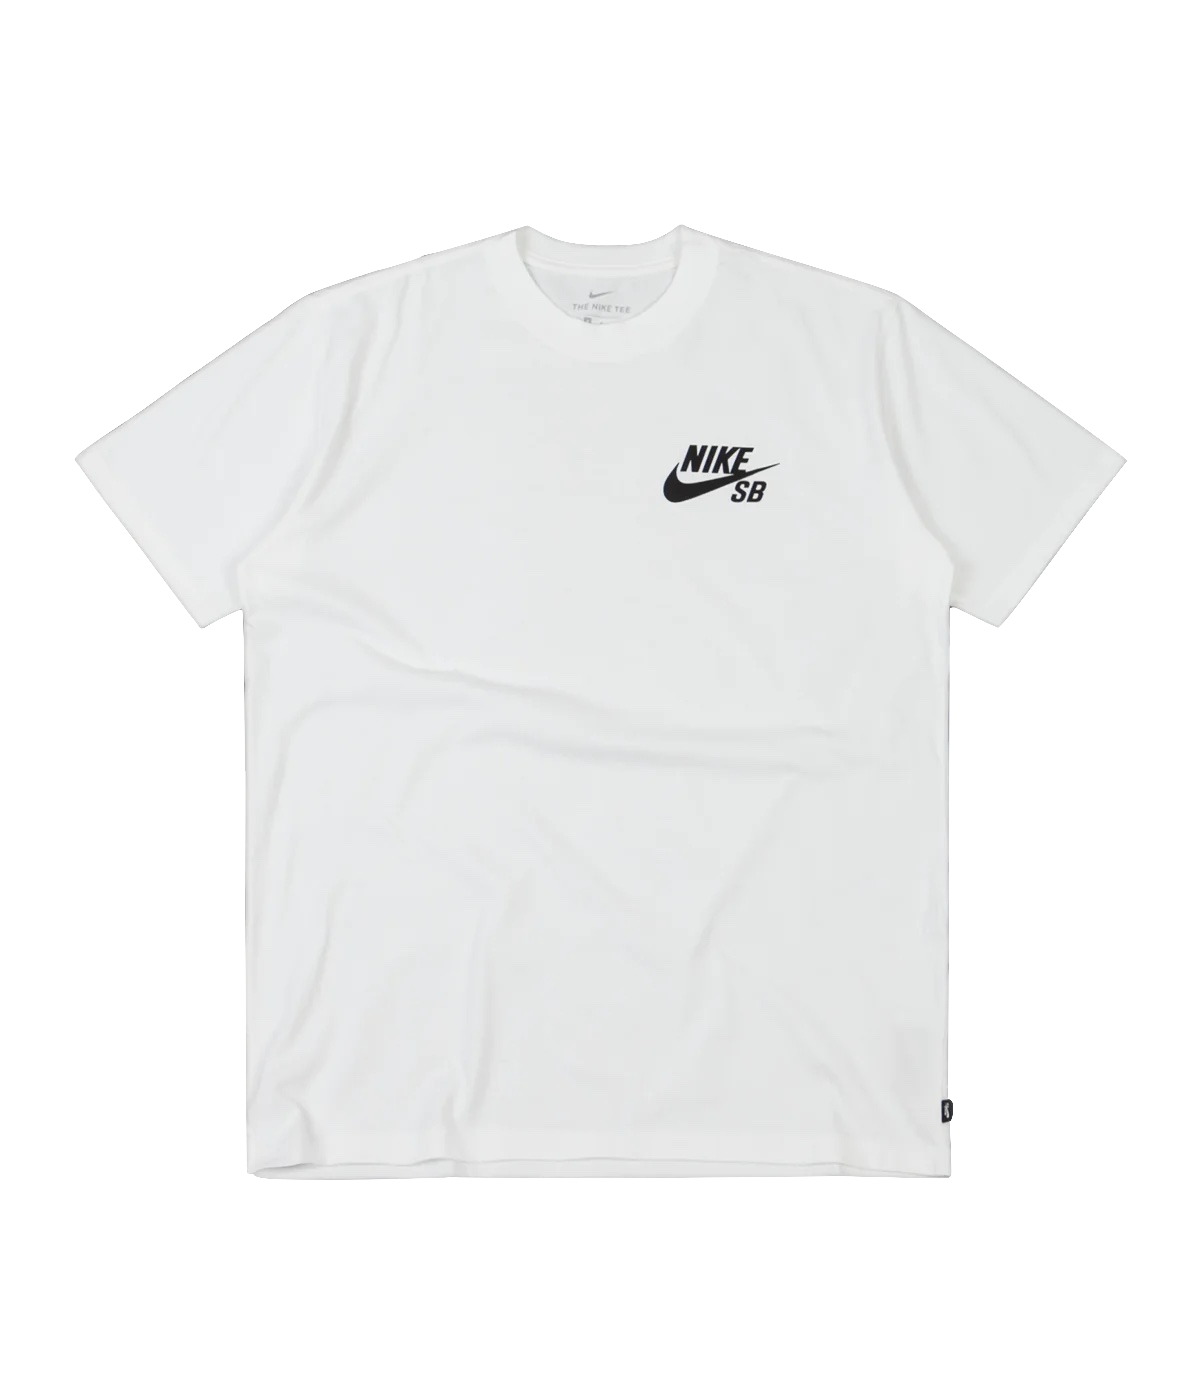 Nike SB tee Icon Mini white black